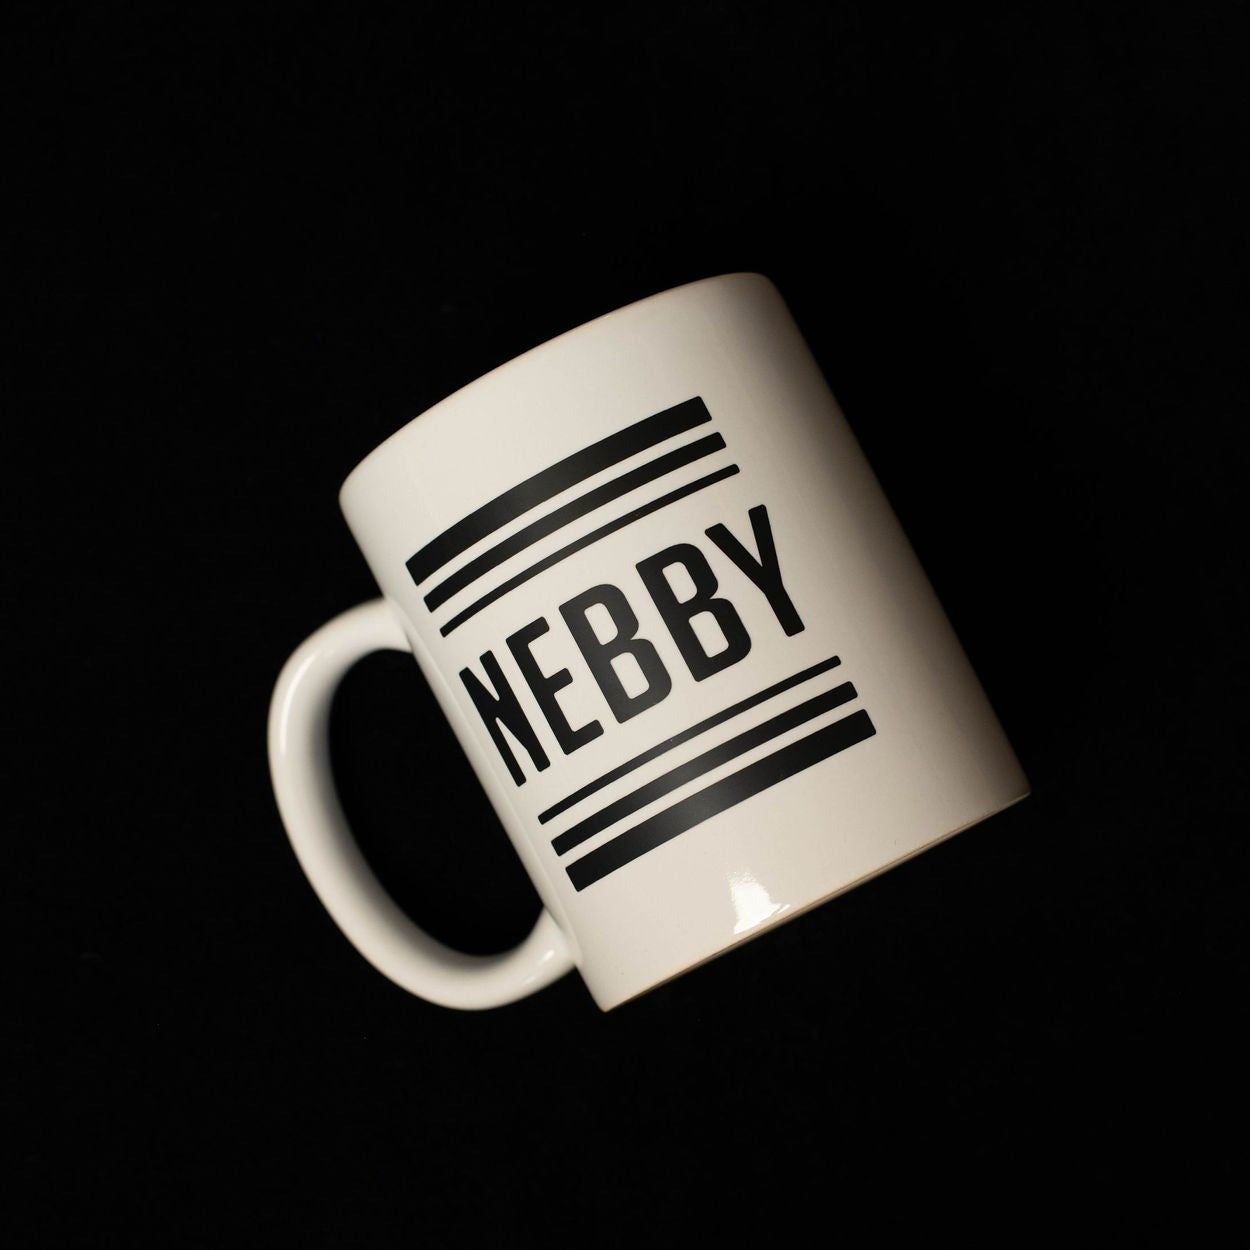 White Nebby Mug